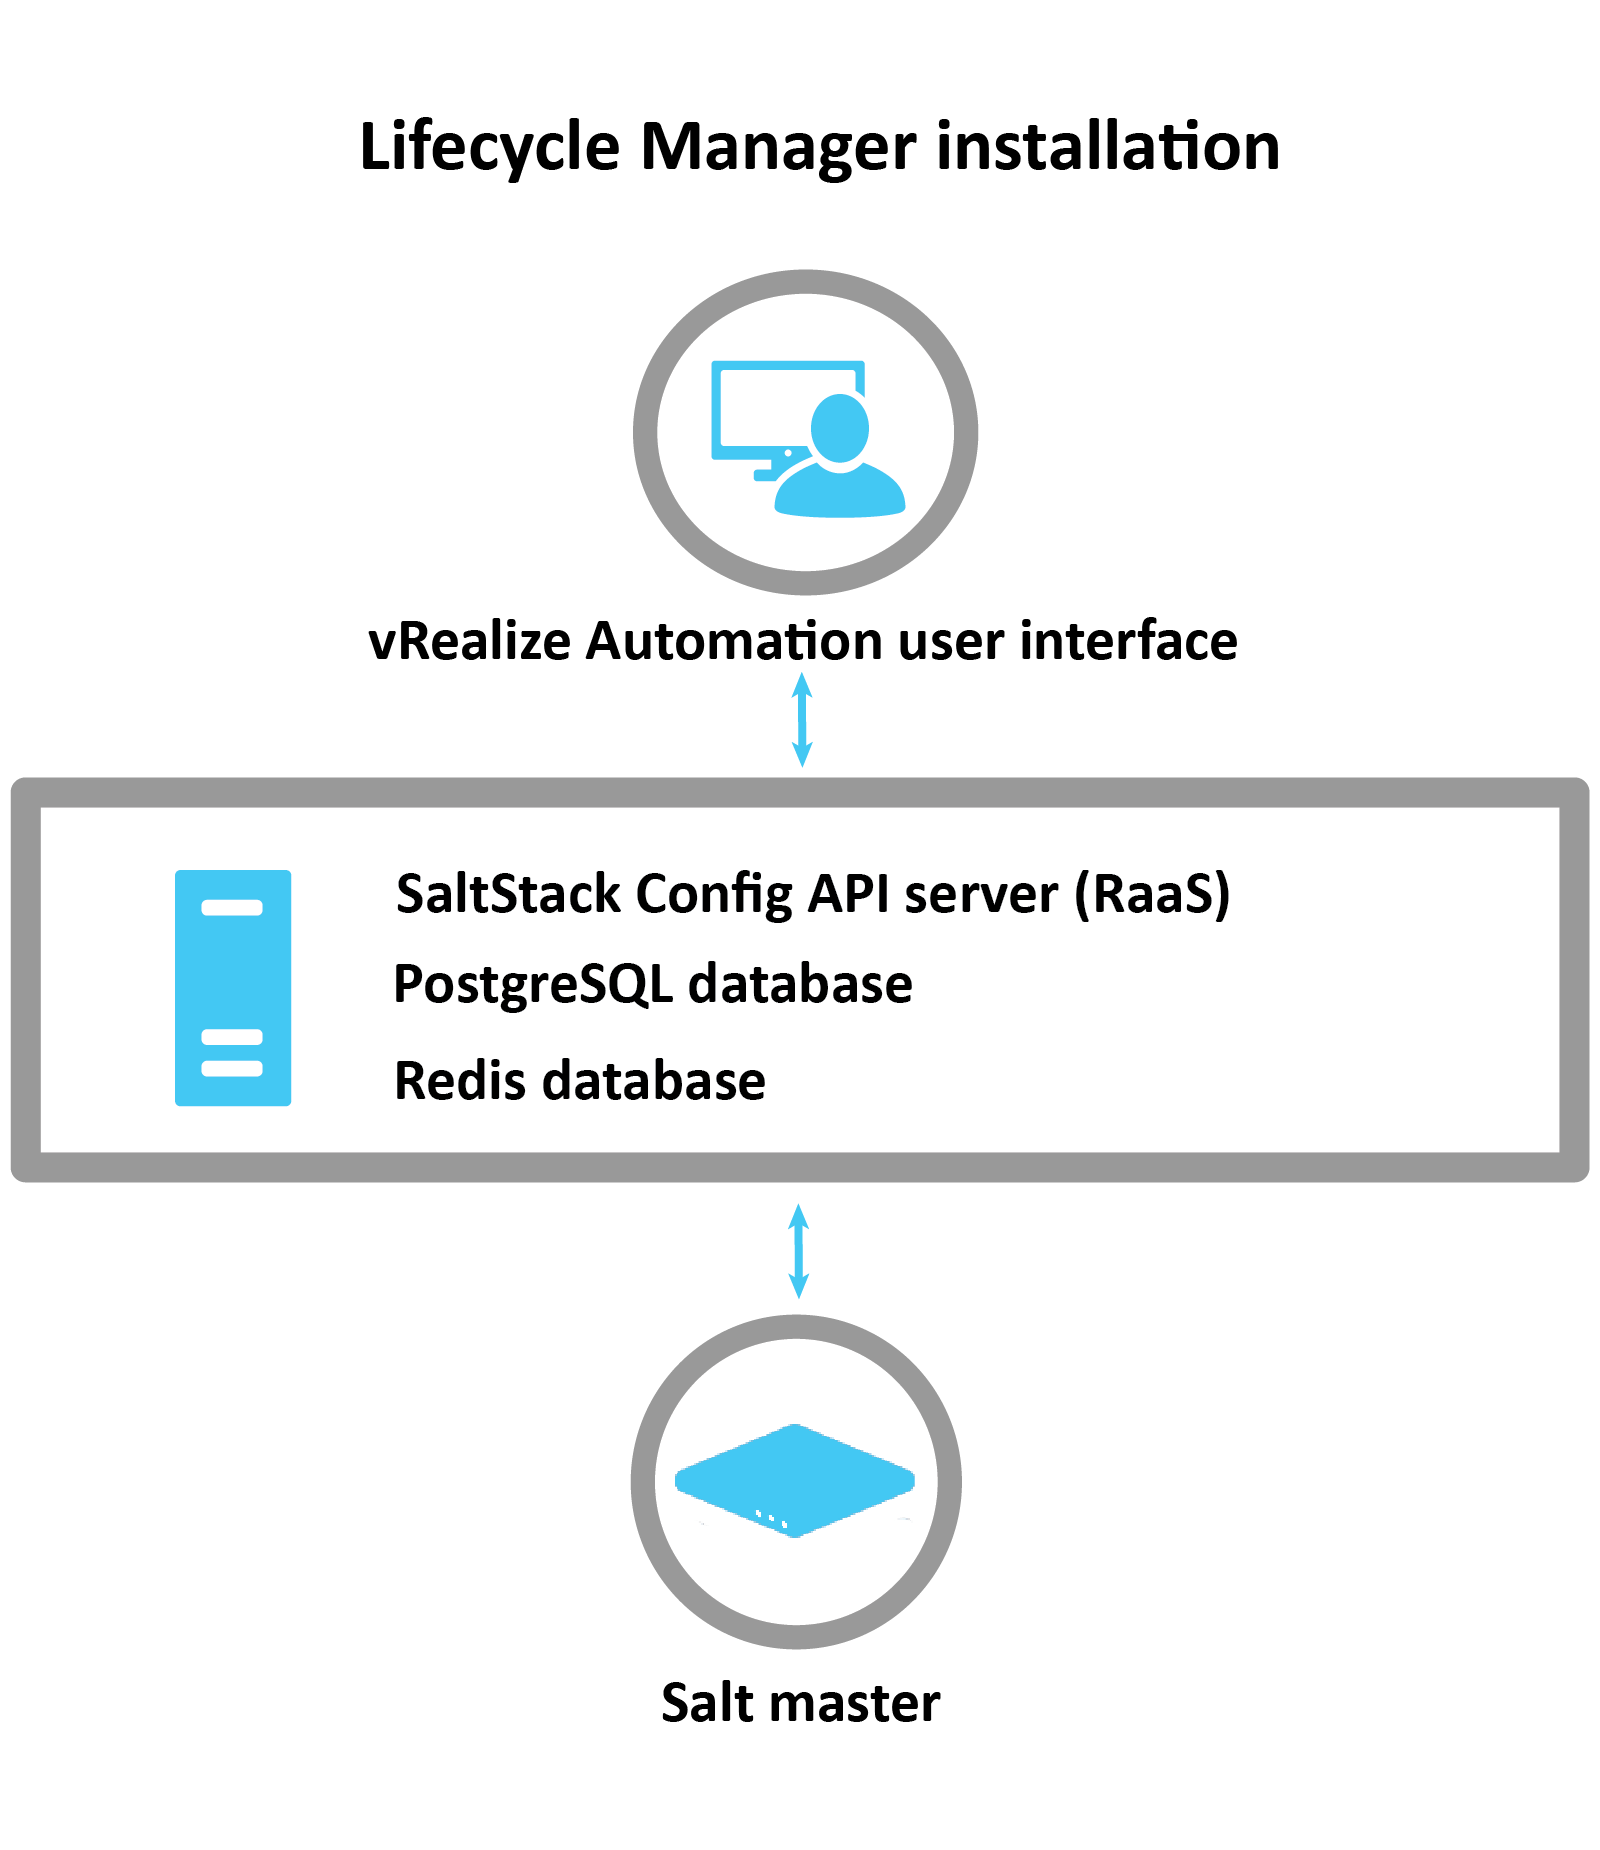 说明如何通过 LCM 安装 SaltStack Config 的图表：LCM 使用 vRA 接口安装 RaaS 服务器、Postgres 数据库和 redis 数据库。安装后，将配置 Salt 主节点。